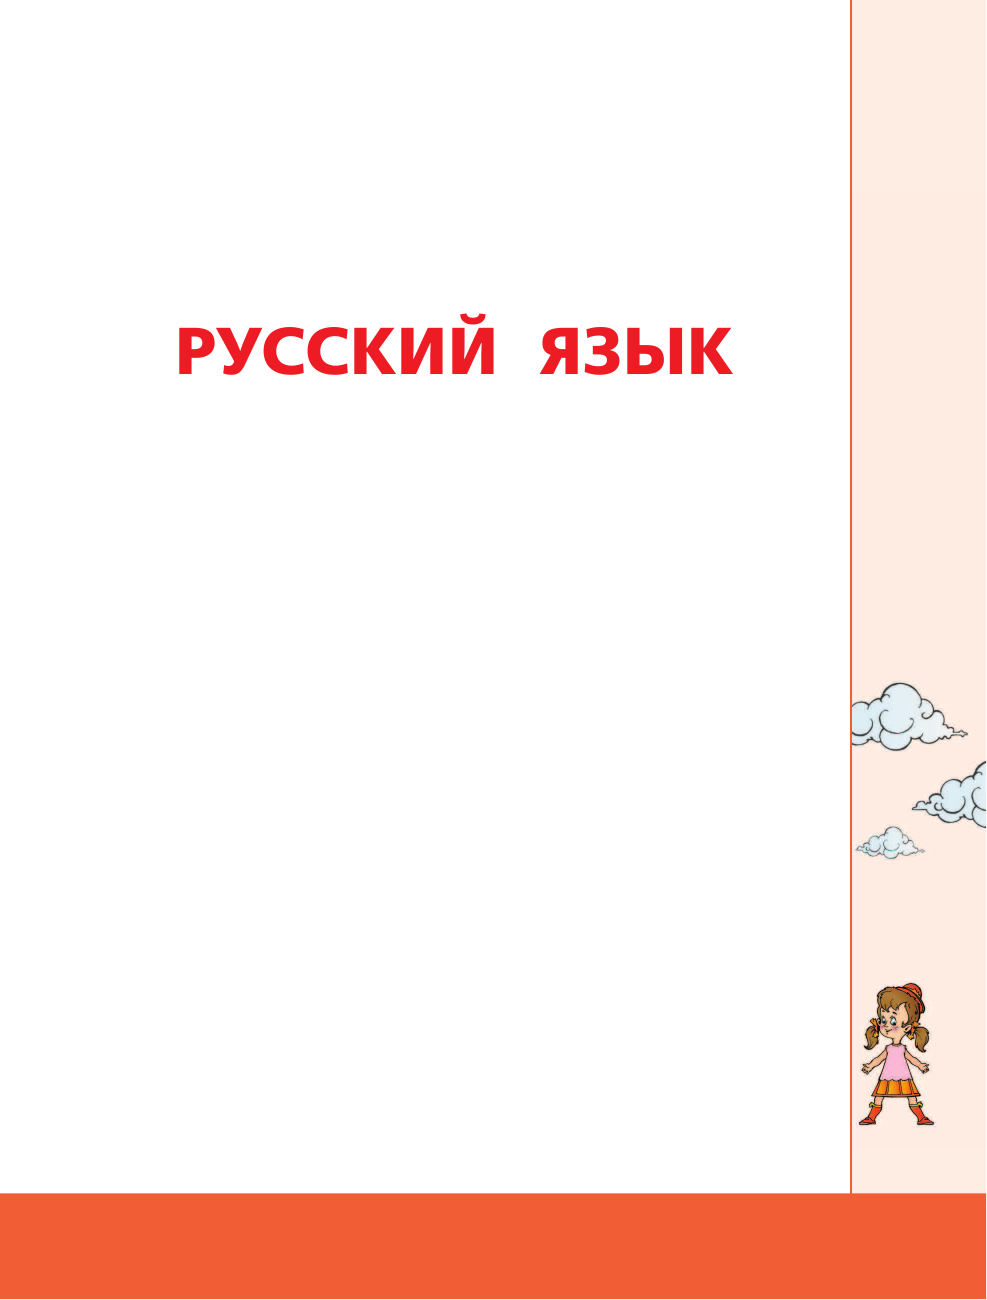  Русский язык и математика: полный курс для начальной школы - страница 2